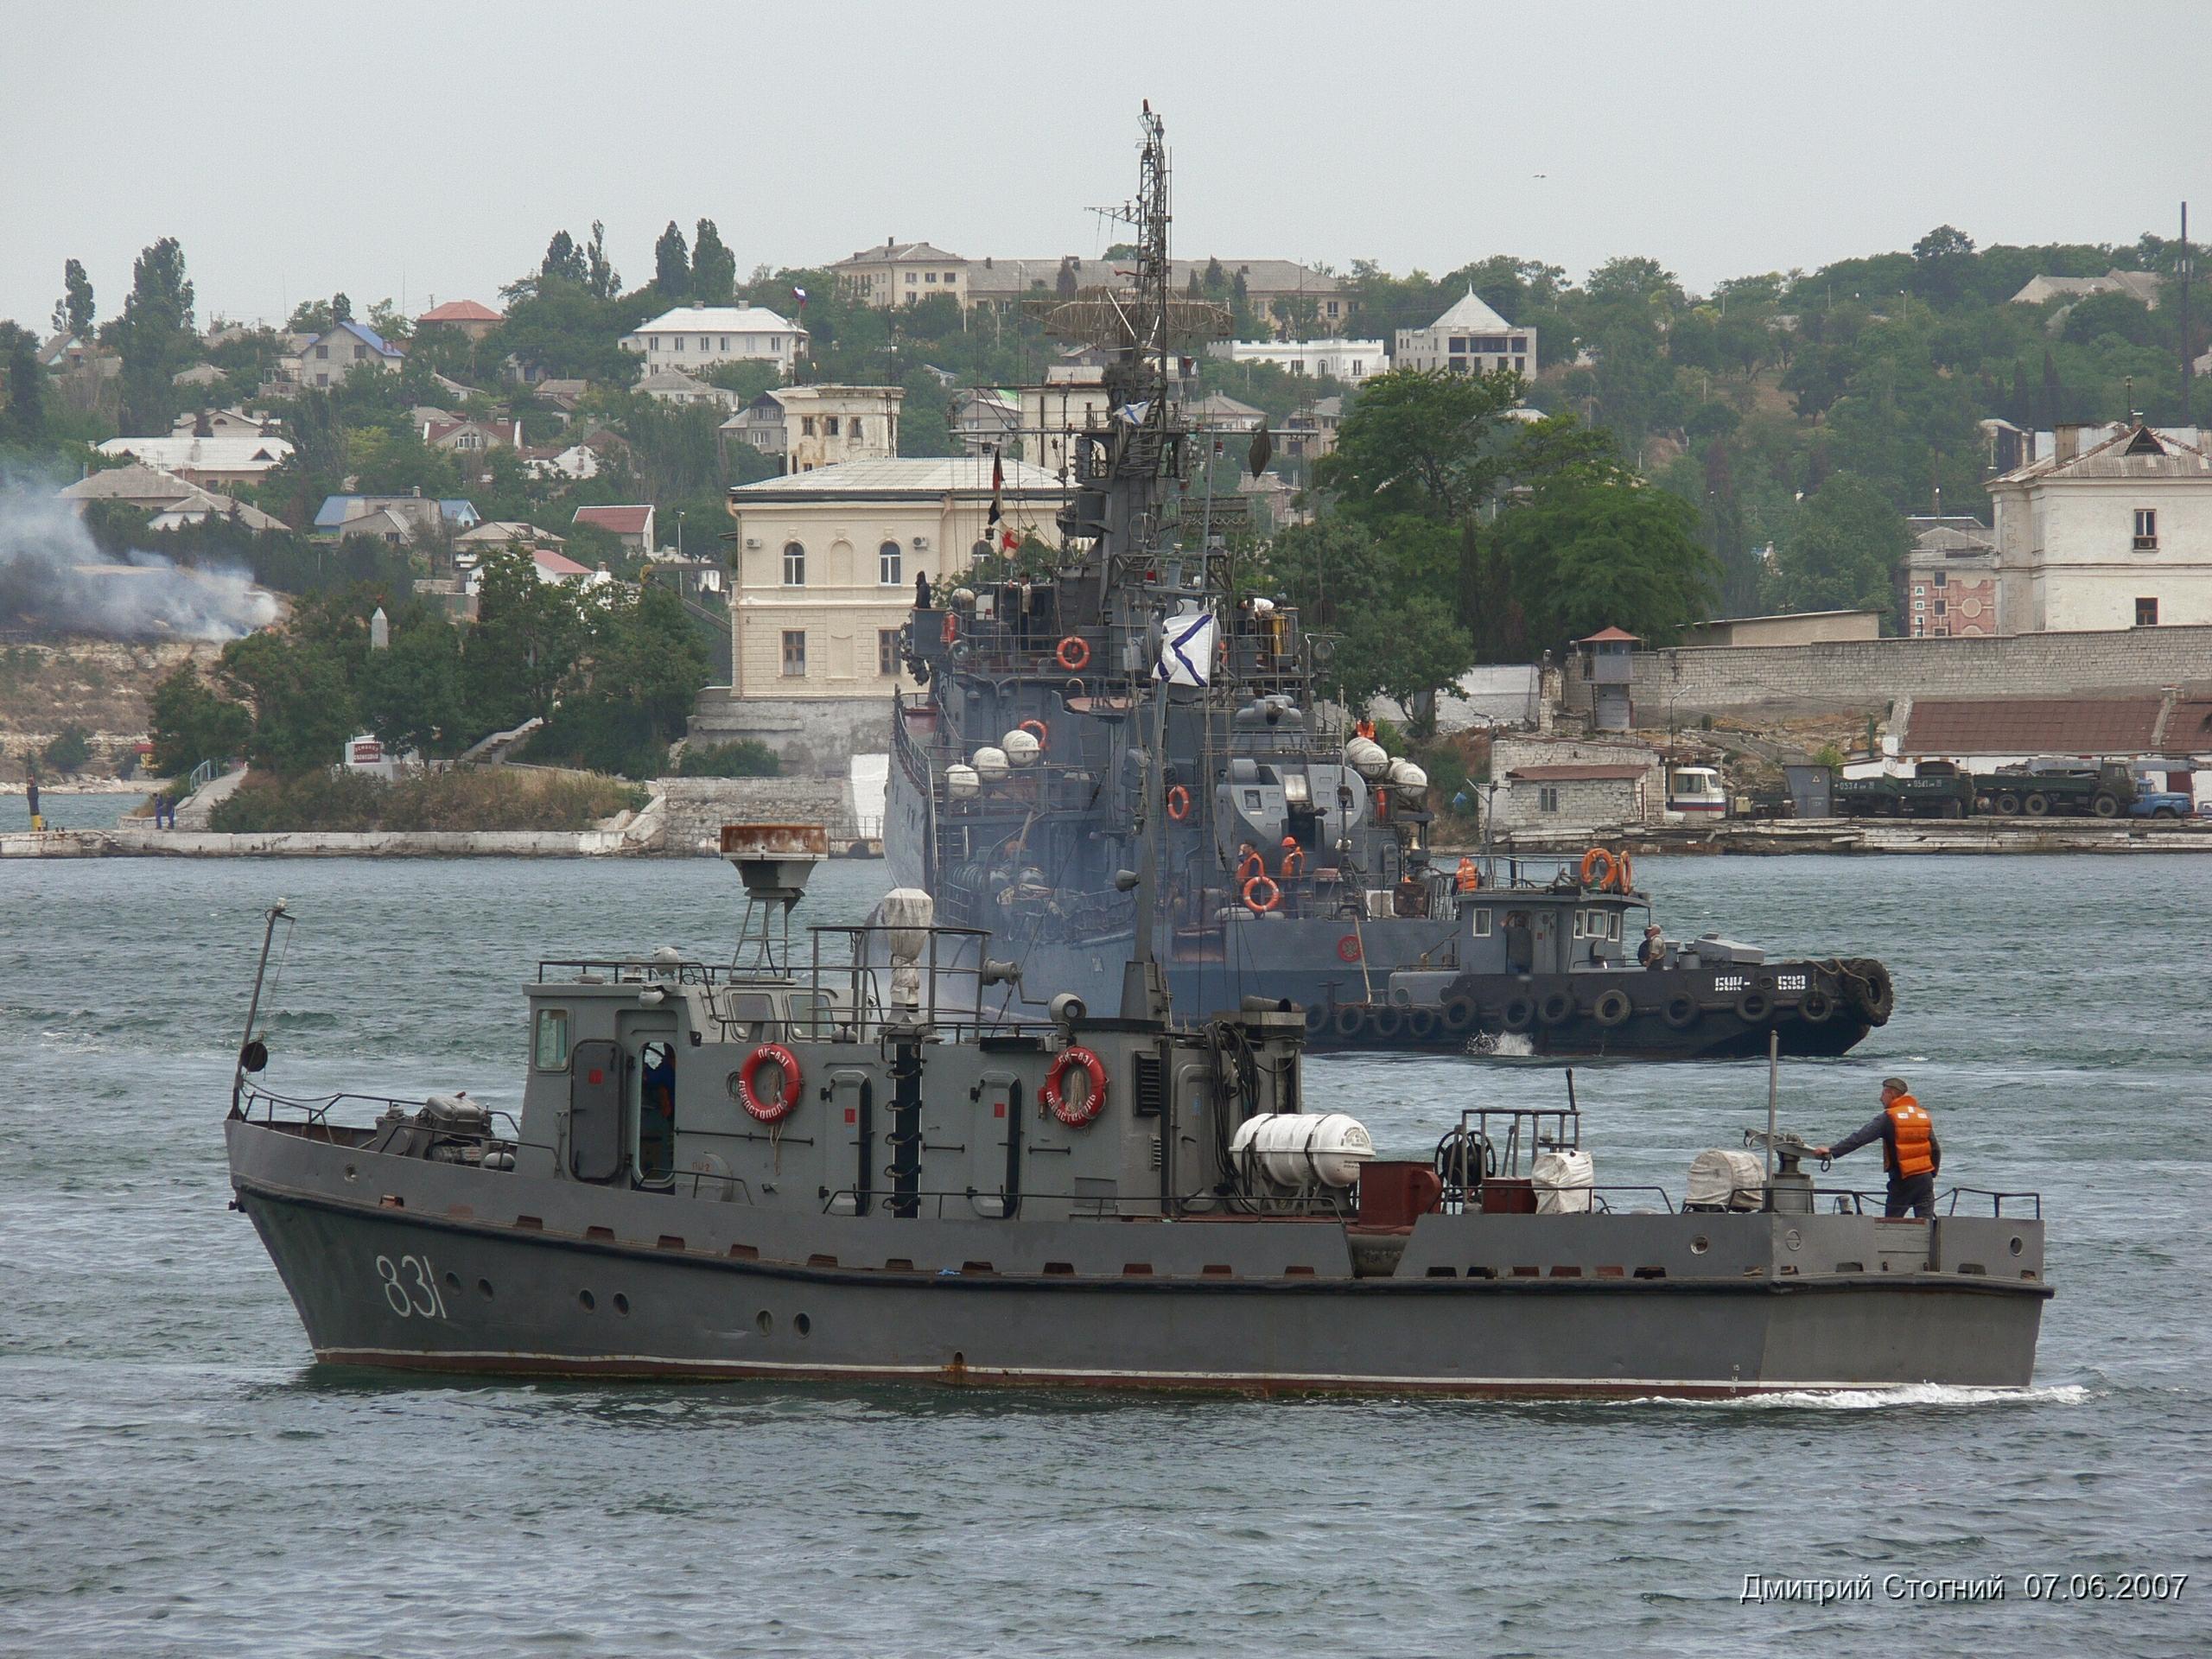 PK-831. 2007,06,07. Sevastopol.JPG